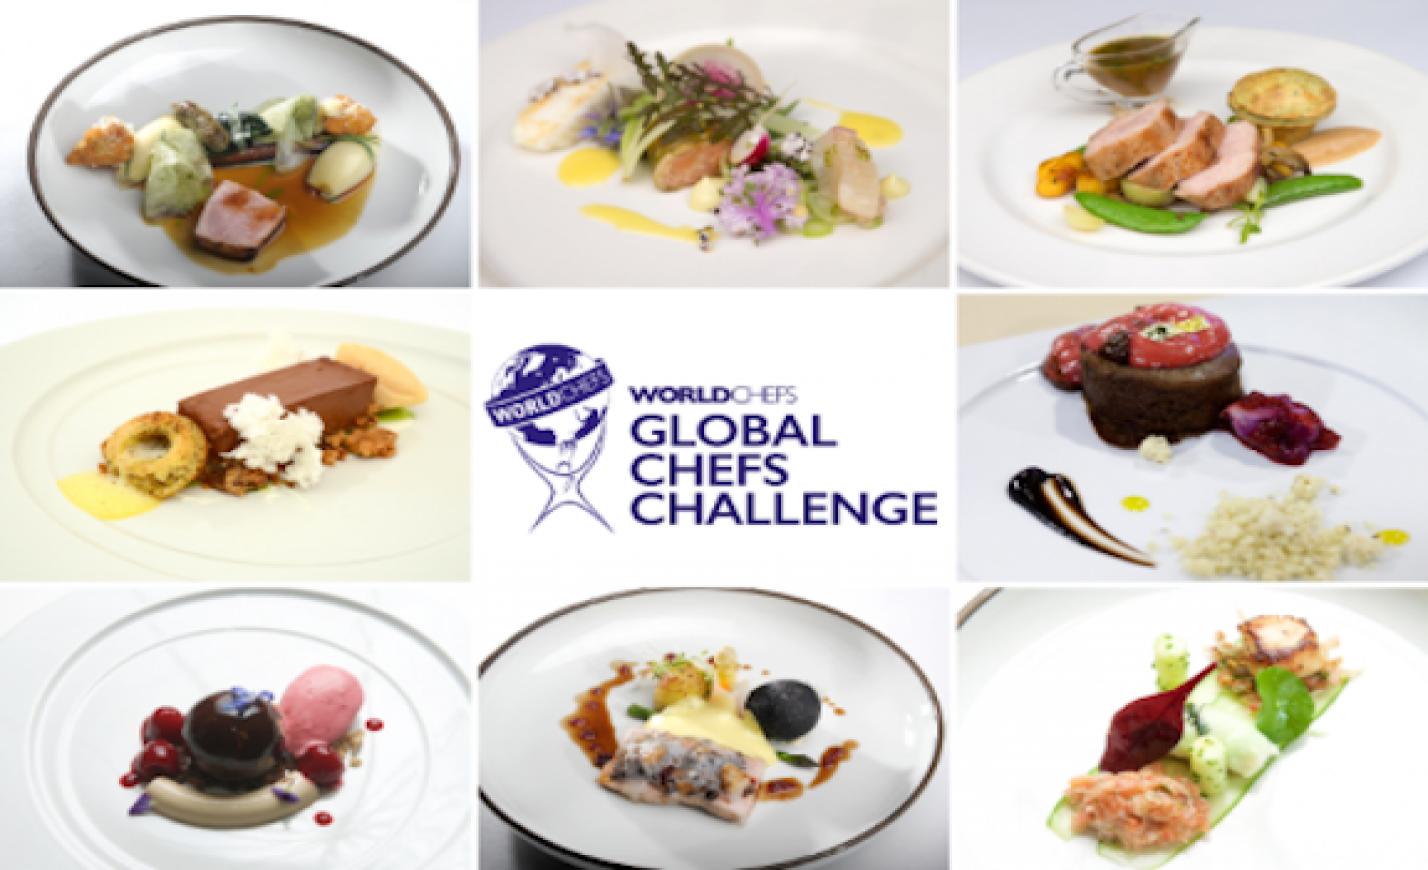 Global Chefs Challenge: a magyar szakács és cukrász csapat is kijutott a világdöntőre